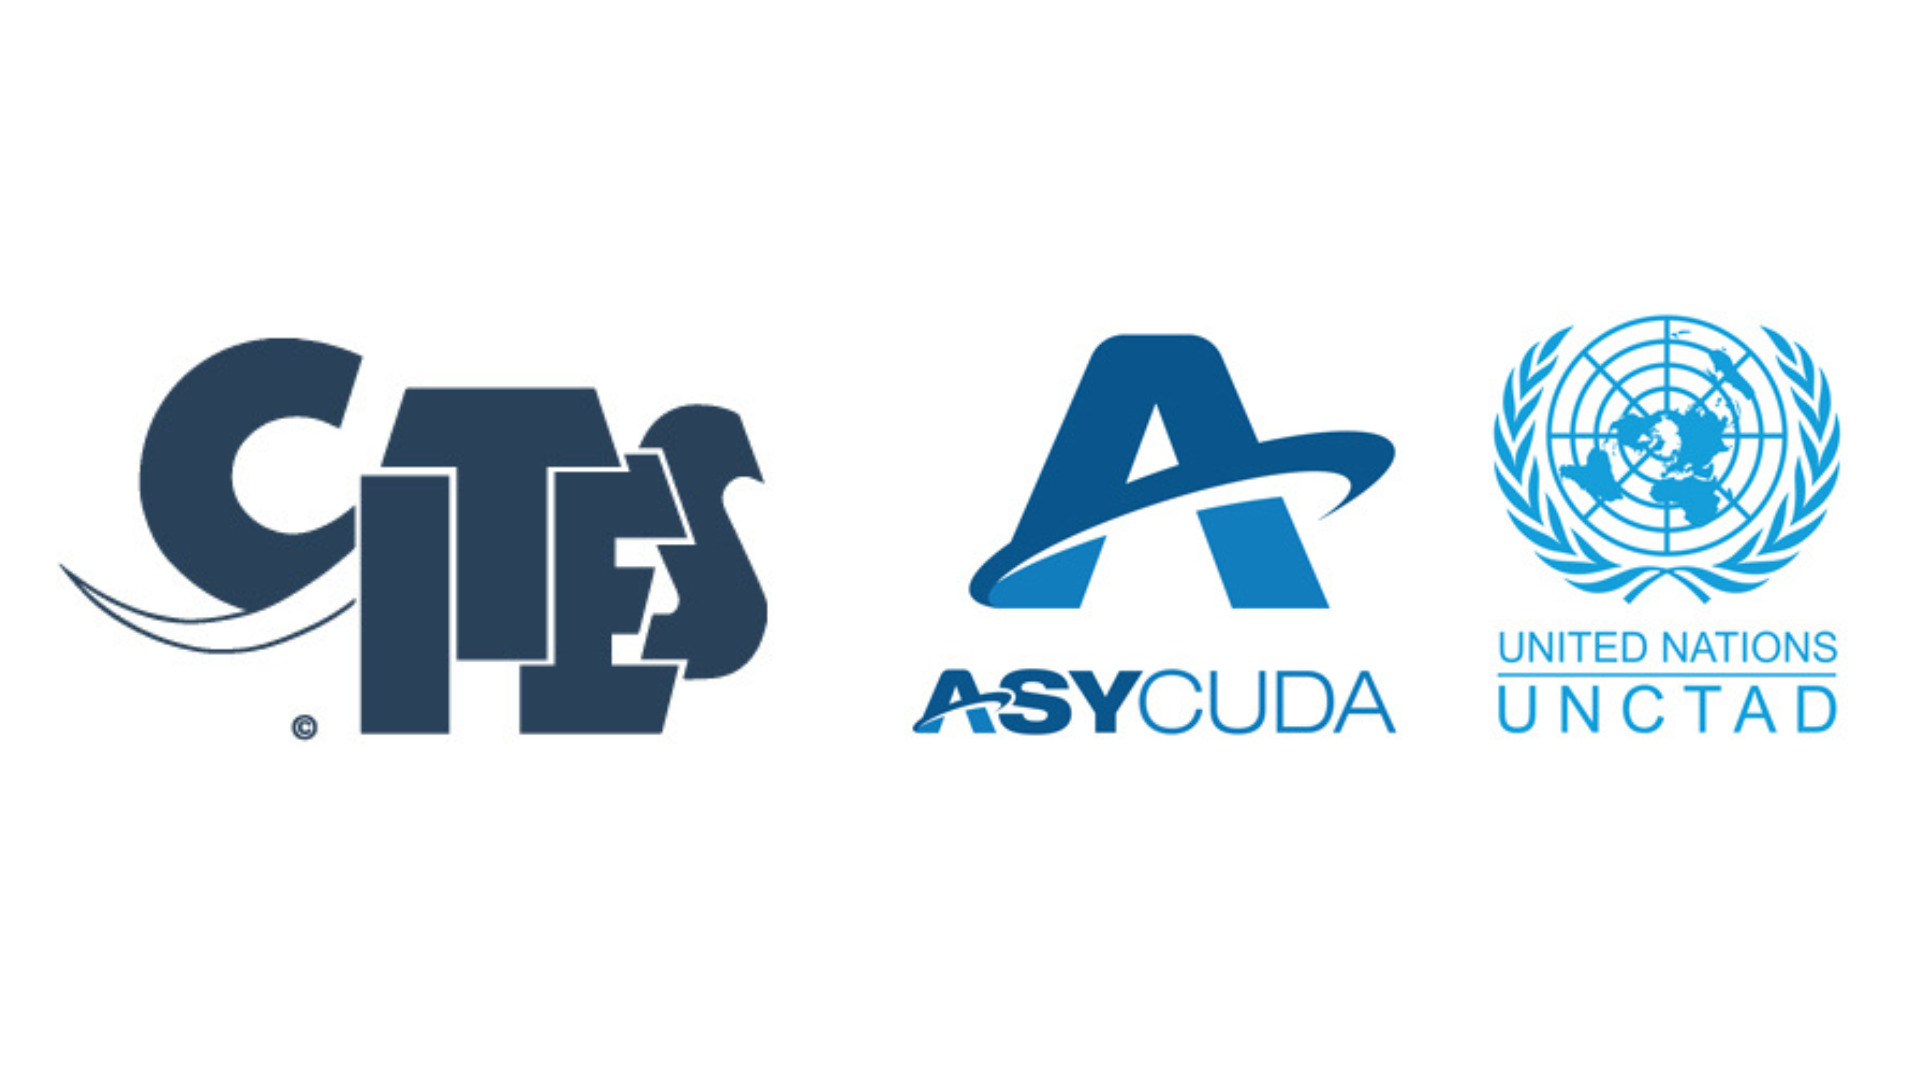 CITES & UNCTAD logos